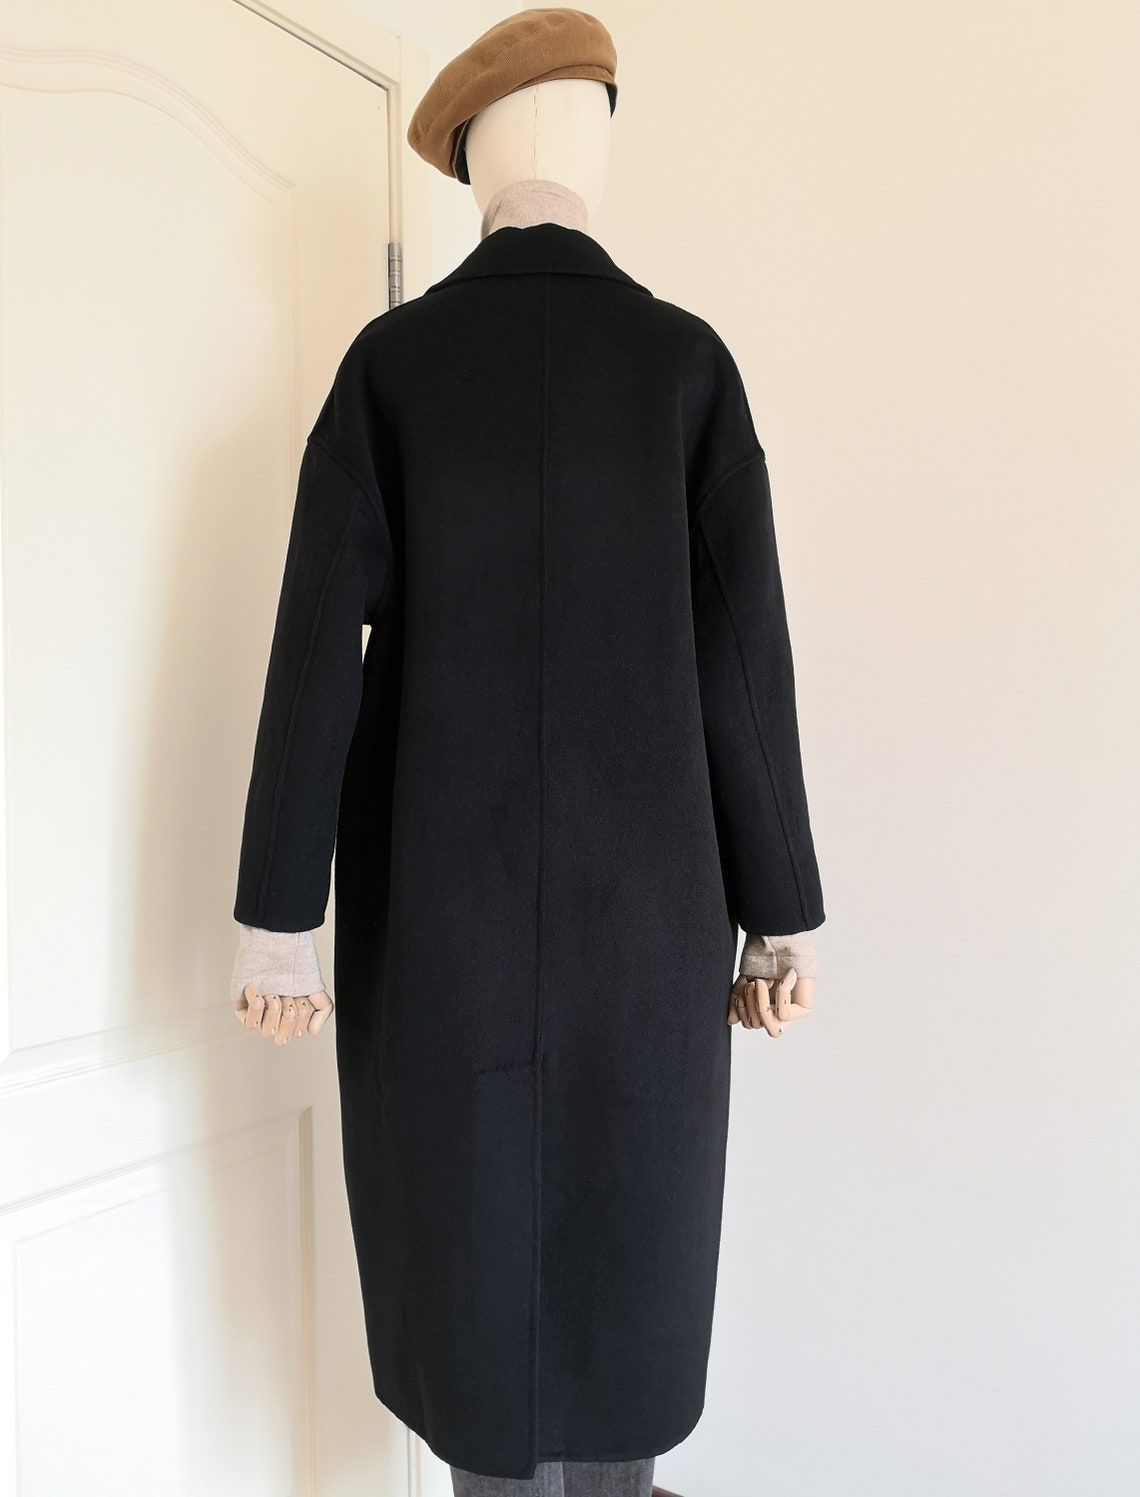 Winter Wool Coat Minimalist Black Overcoat Women Cashmere Long | Etsy